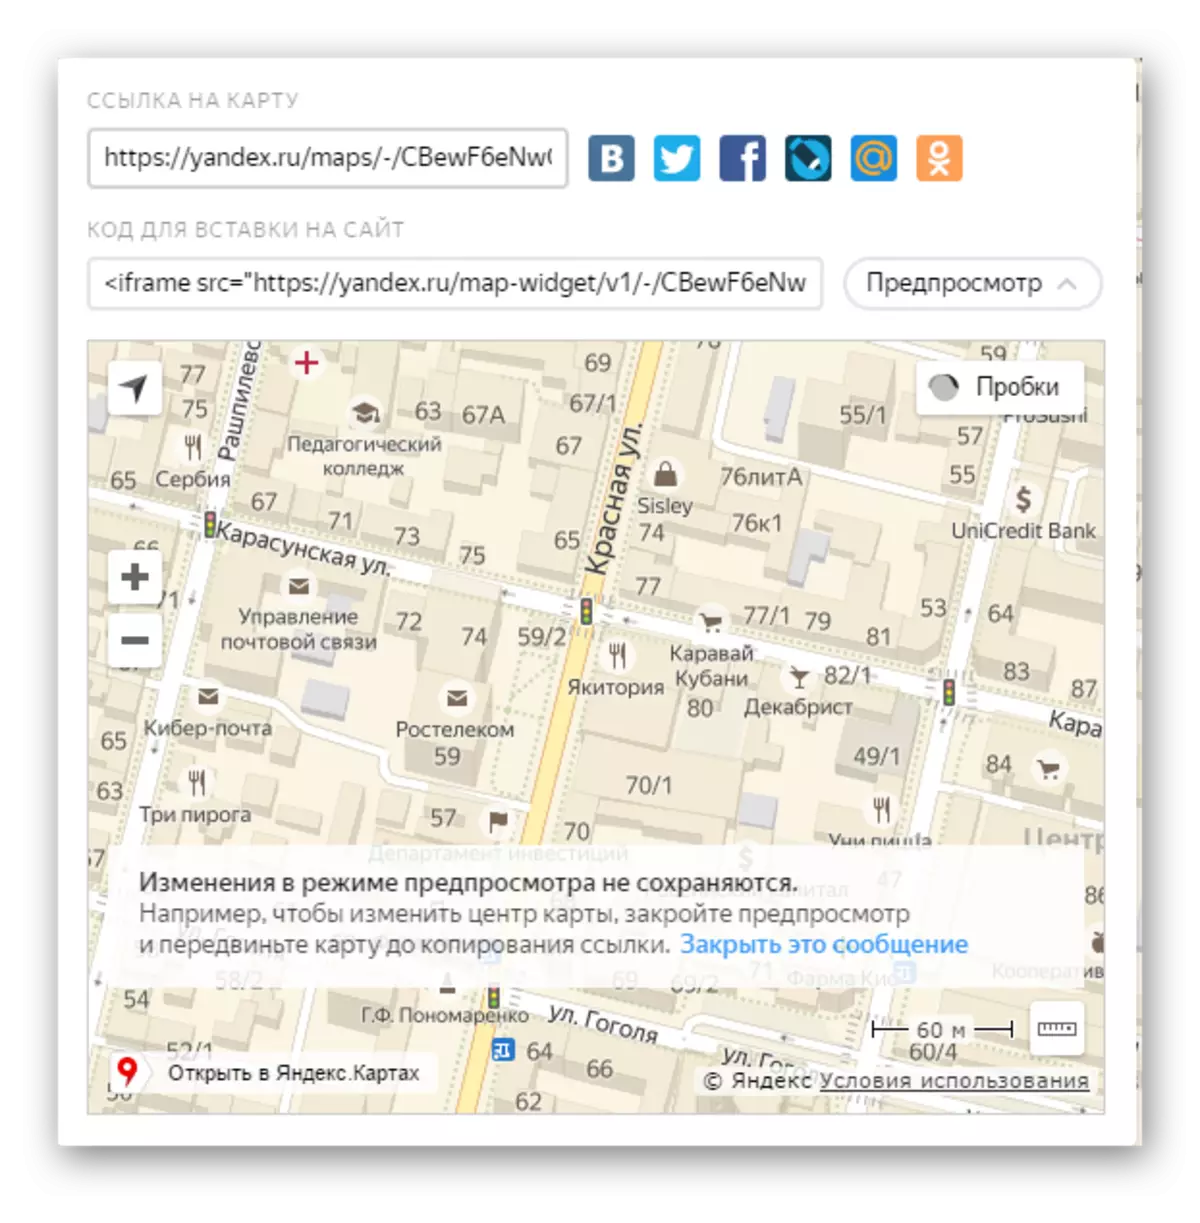 Idirishya rya Adirishya Sangira muri Yandex.maps